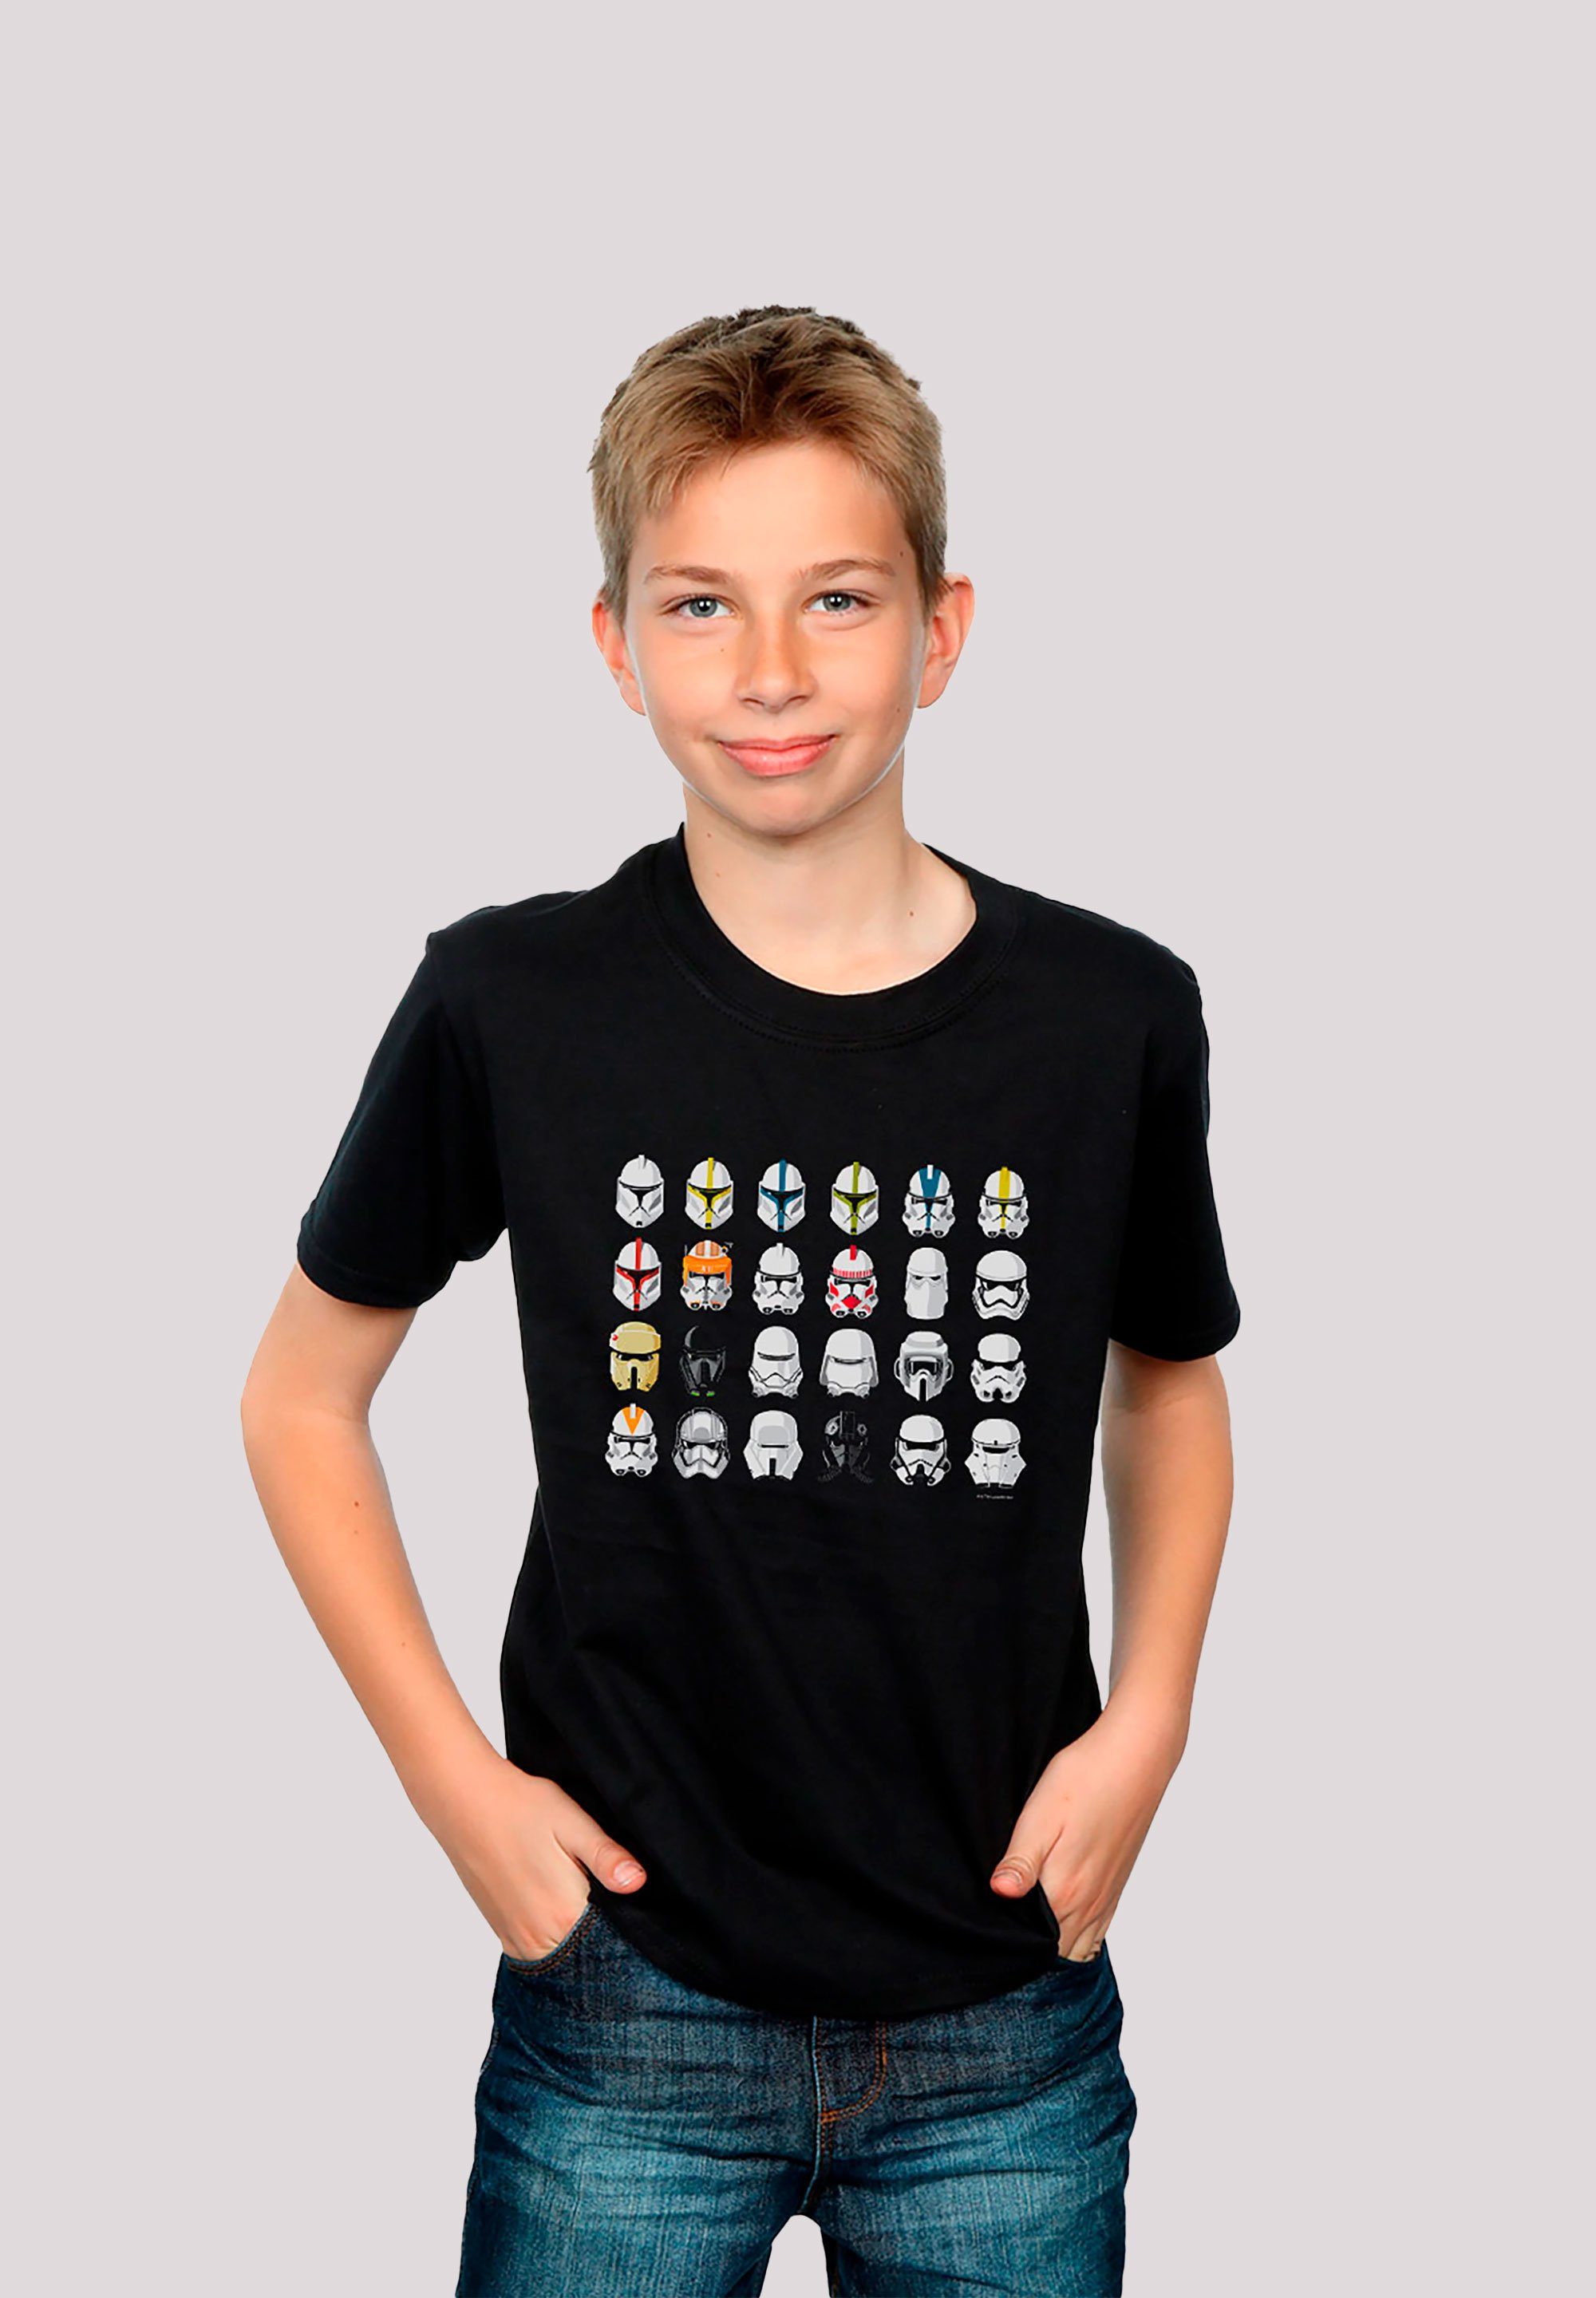 der Stormtrooper Star Wars Piloten T-Shirt Helme Sterne Print F4NT4STIC Krieg schwarz